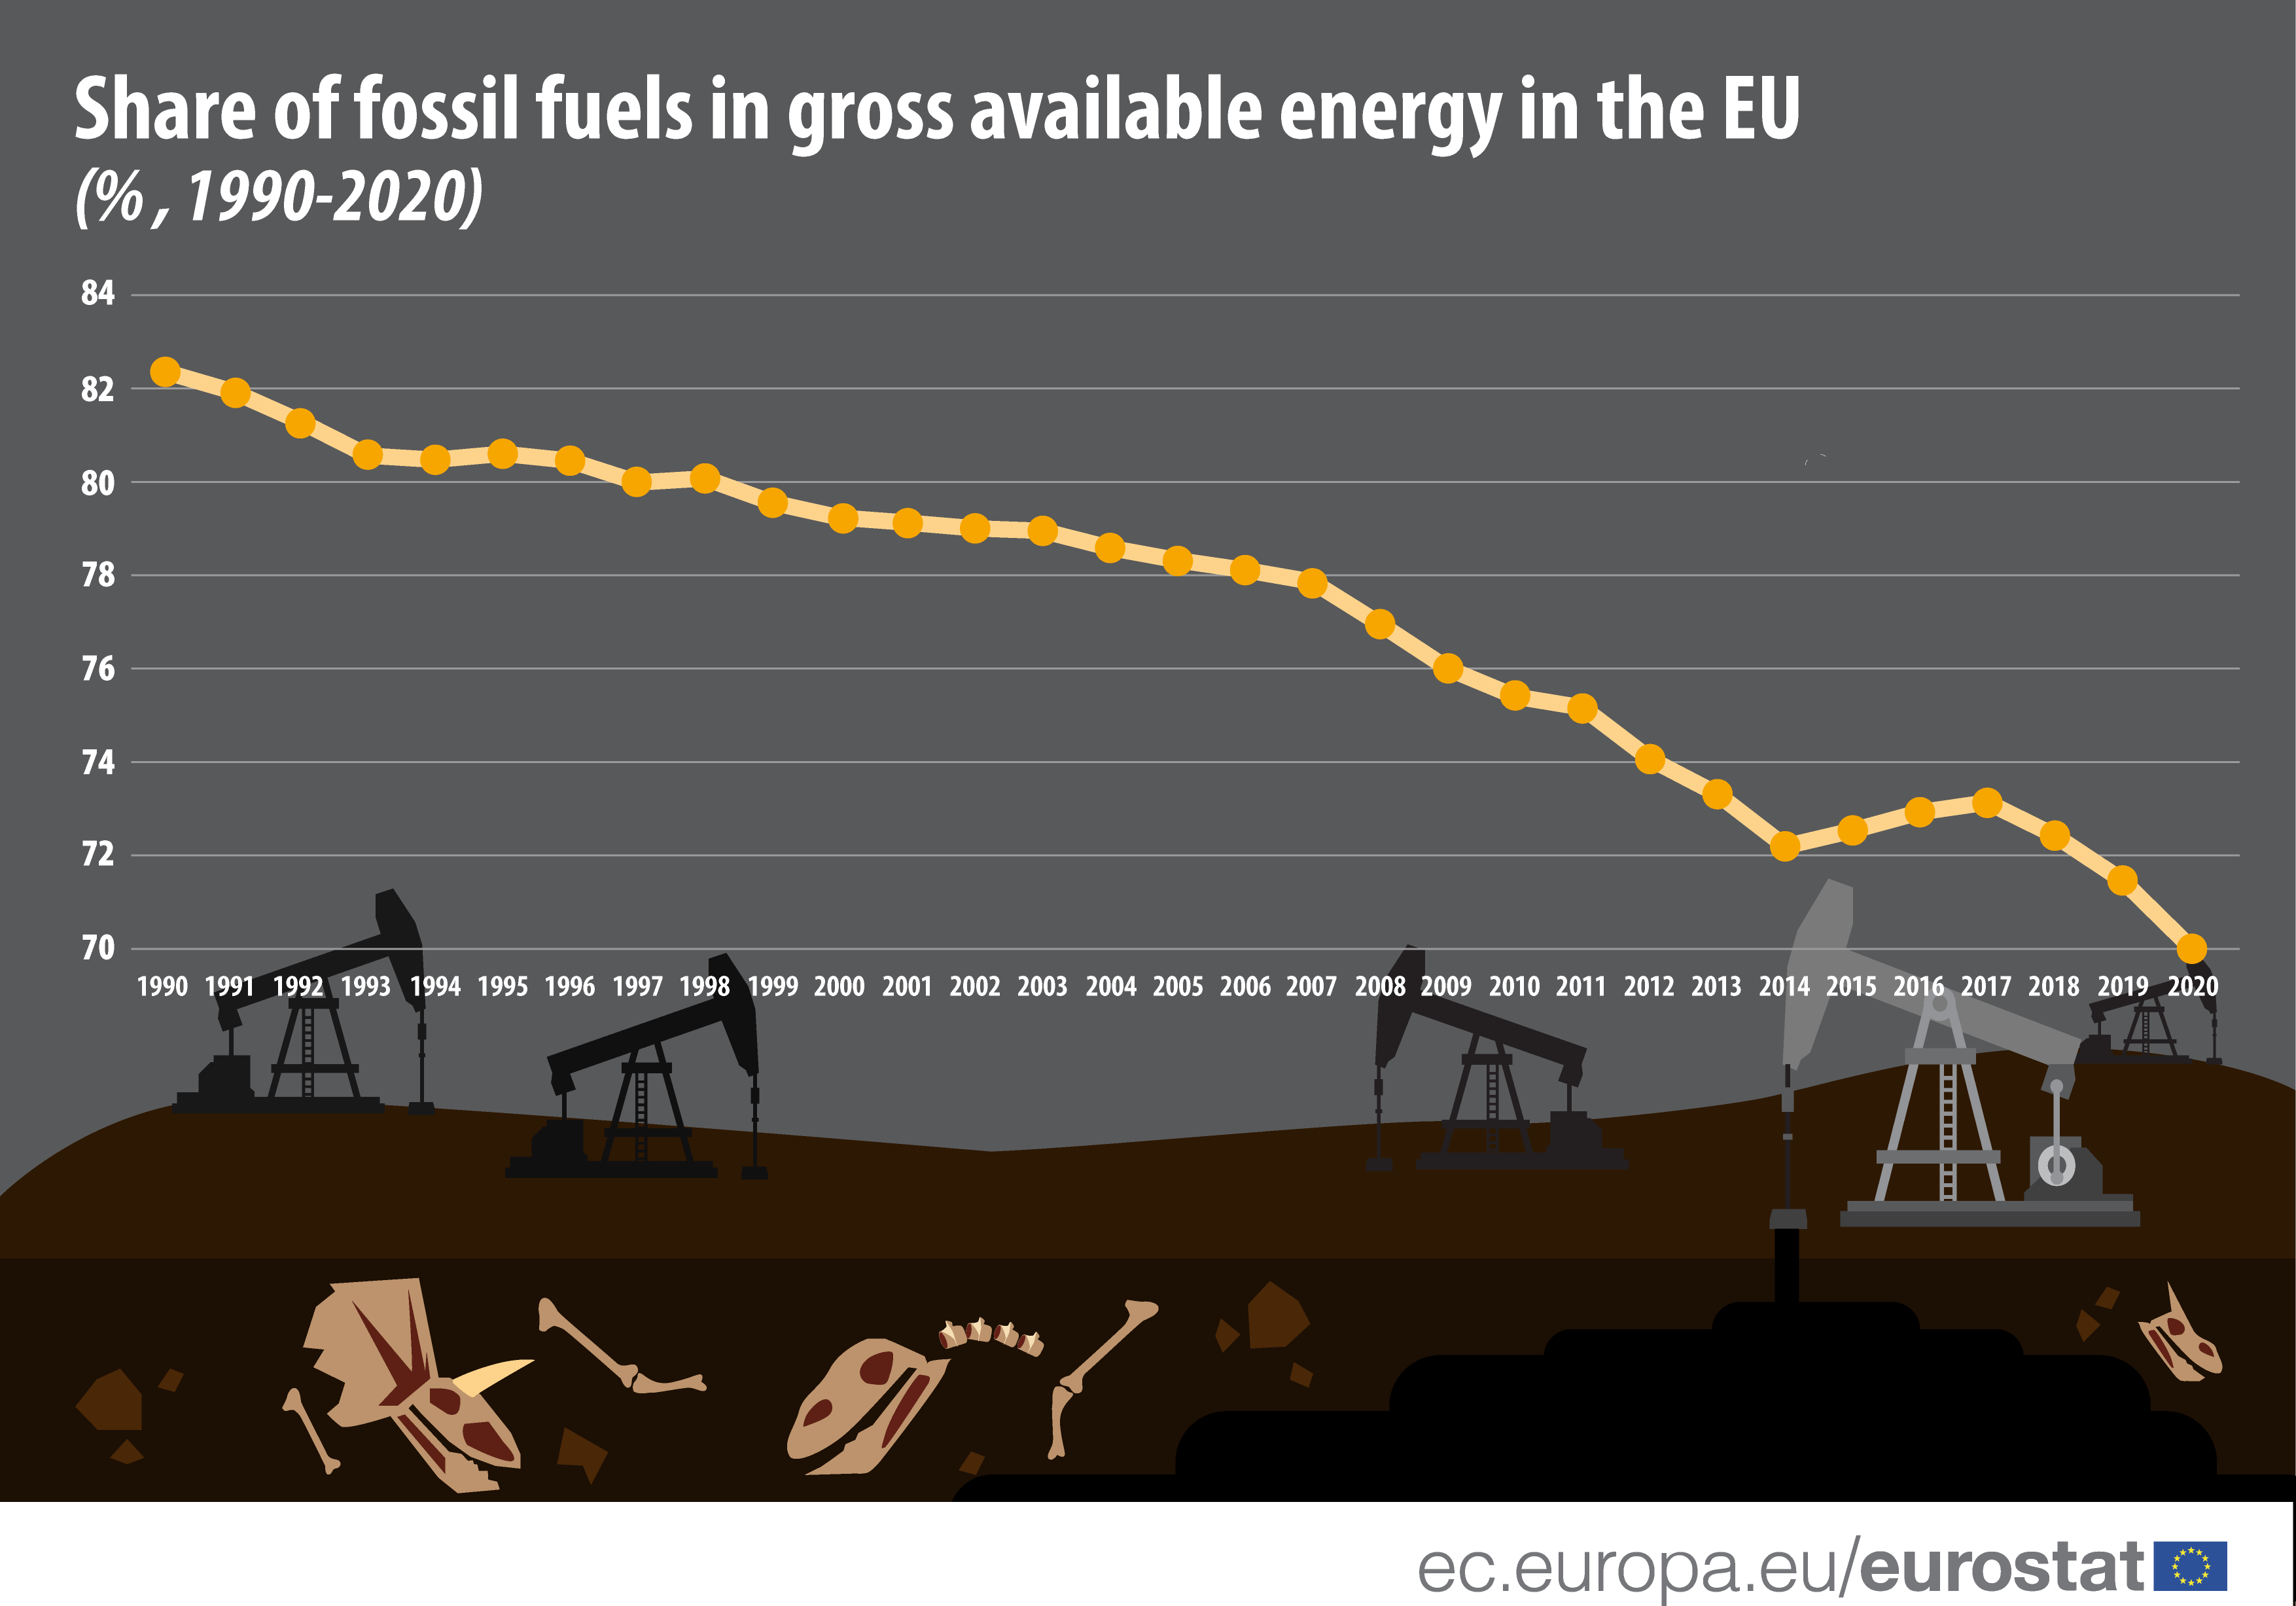 Fossiiliset polttoaineet käytettävissä olevasta bruttoenergiasta: 70 % vuonna 2020 – Tuotteet Eurostat News